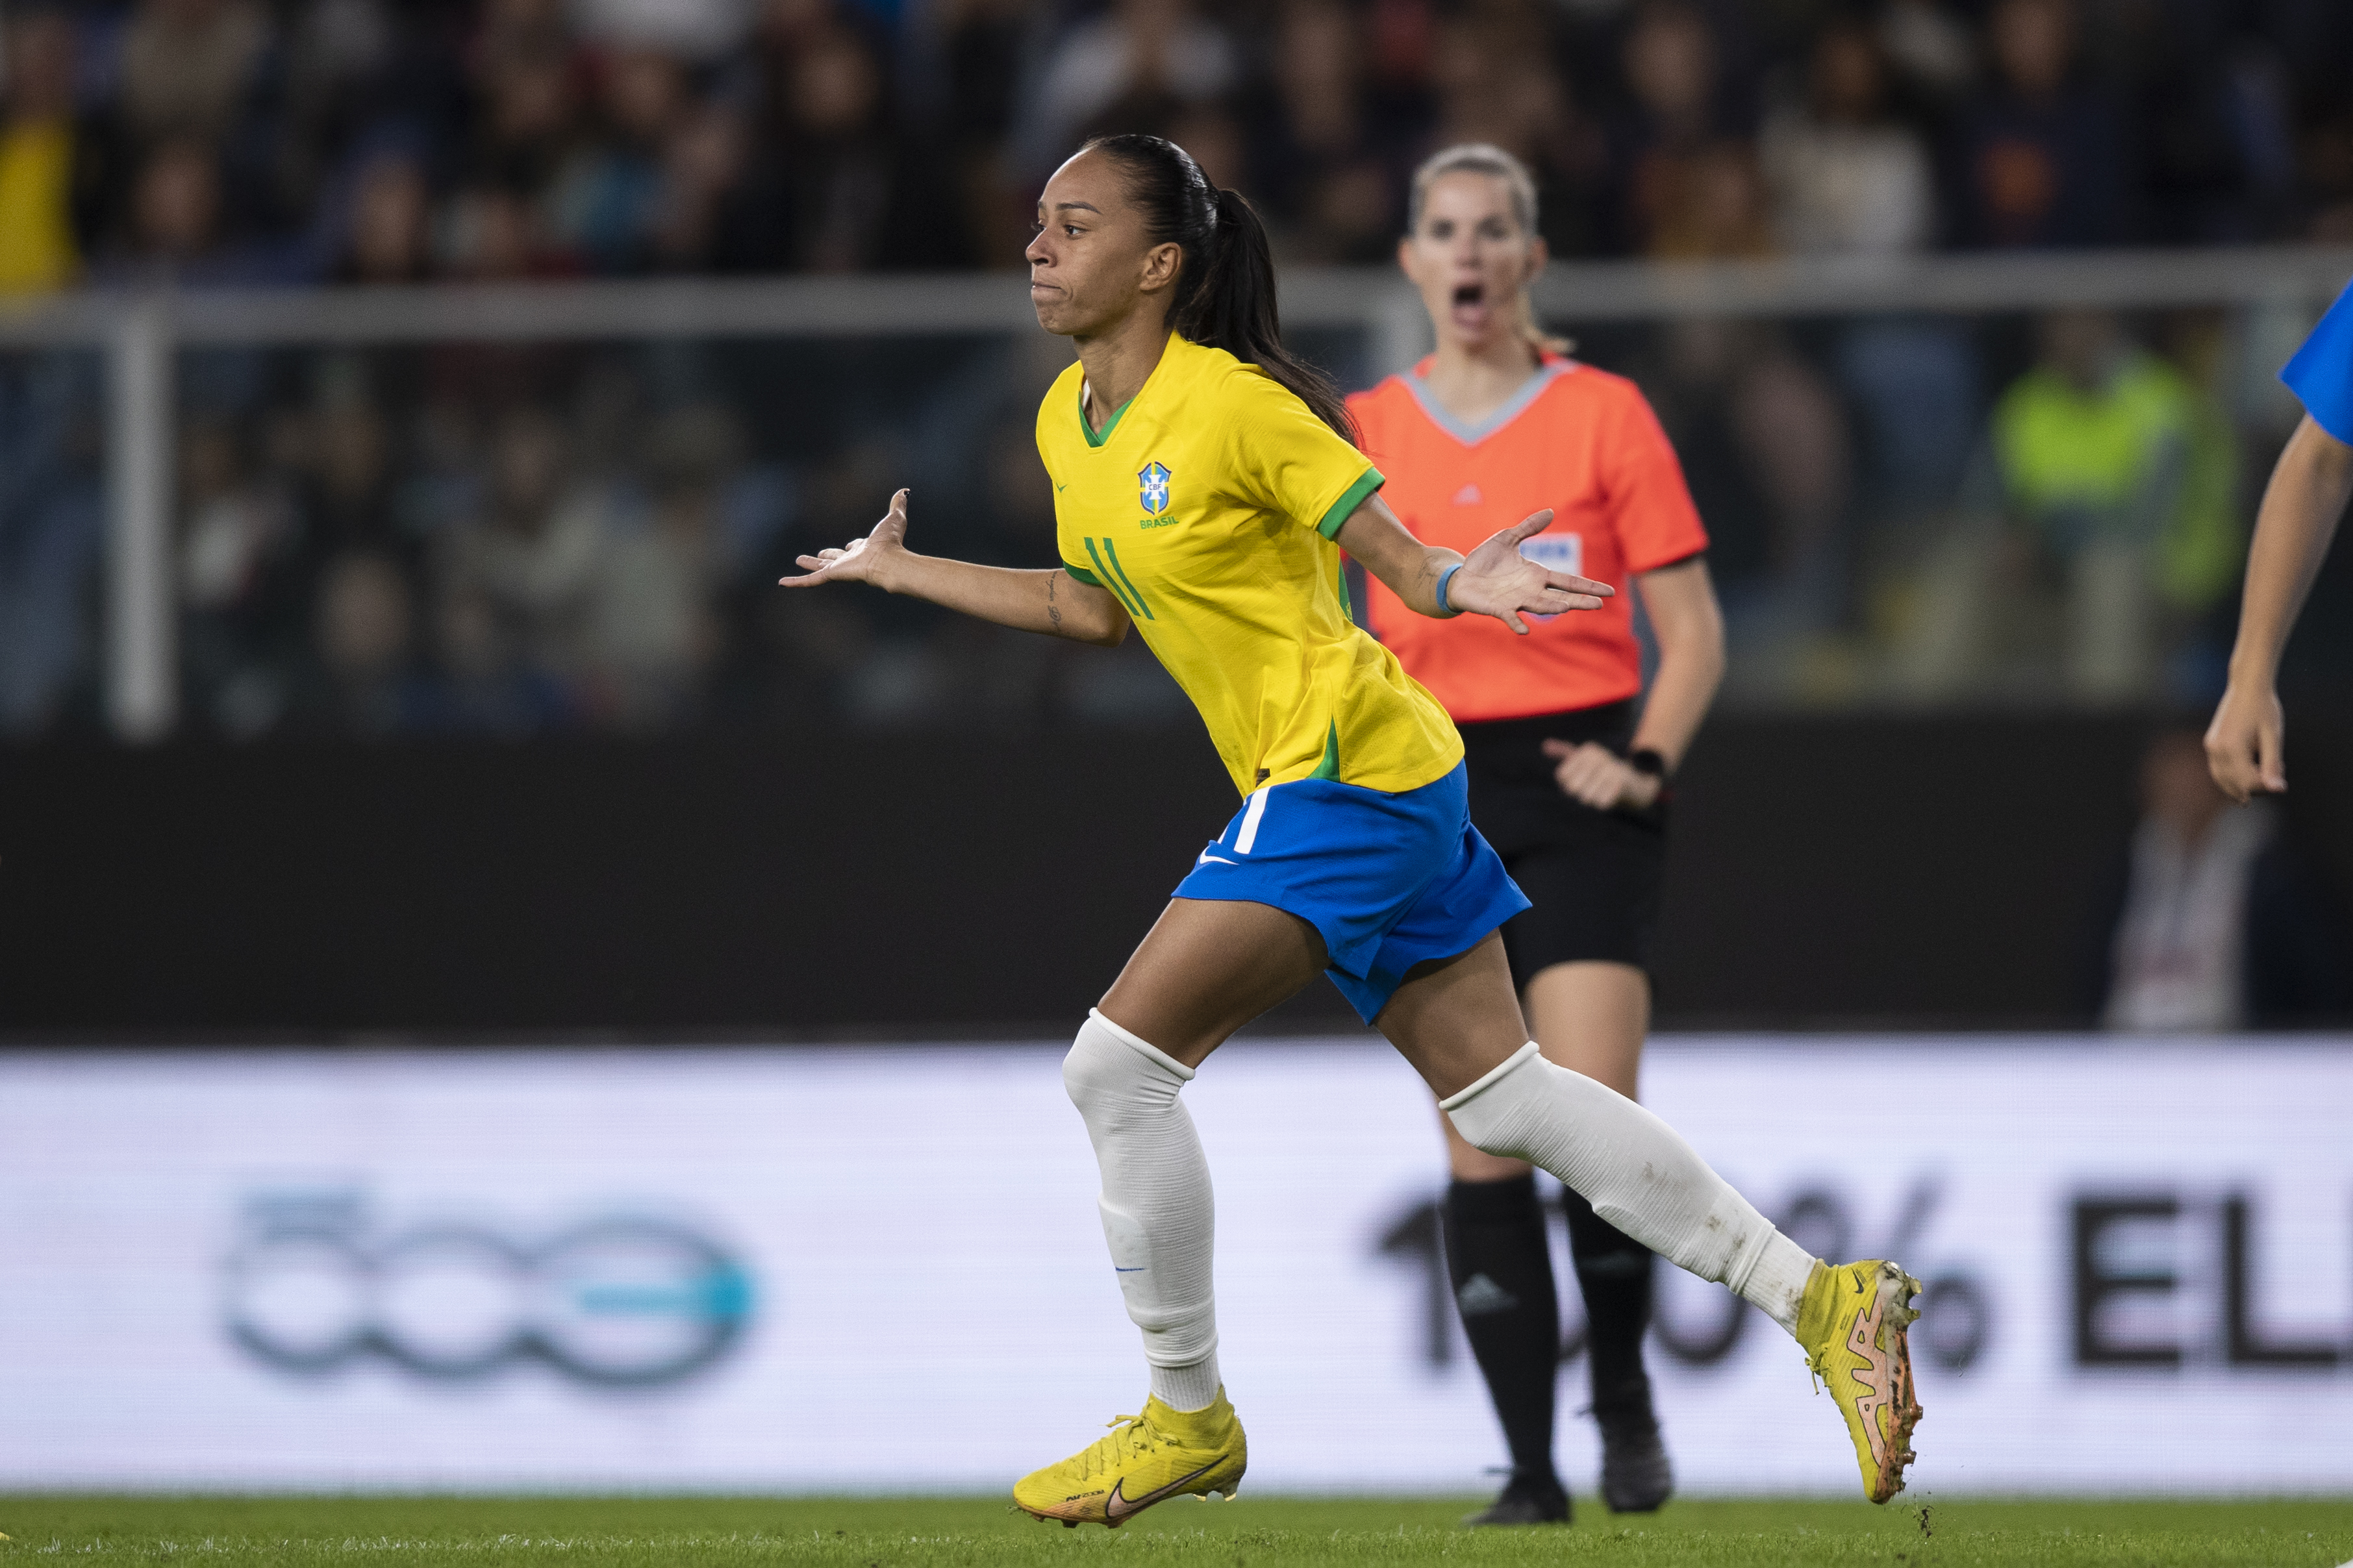 Seleção brasileira feminina vence a Itália e chega a 10ª vitória seguida